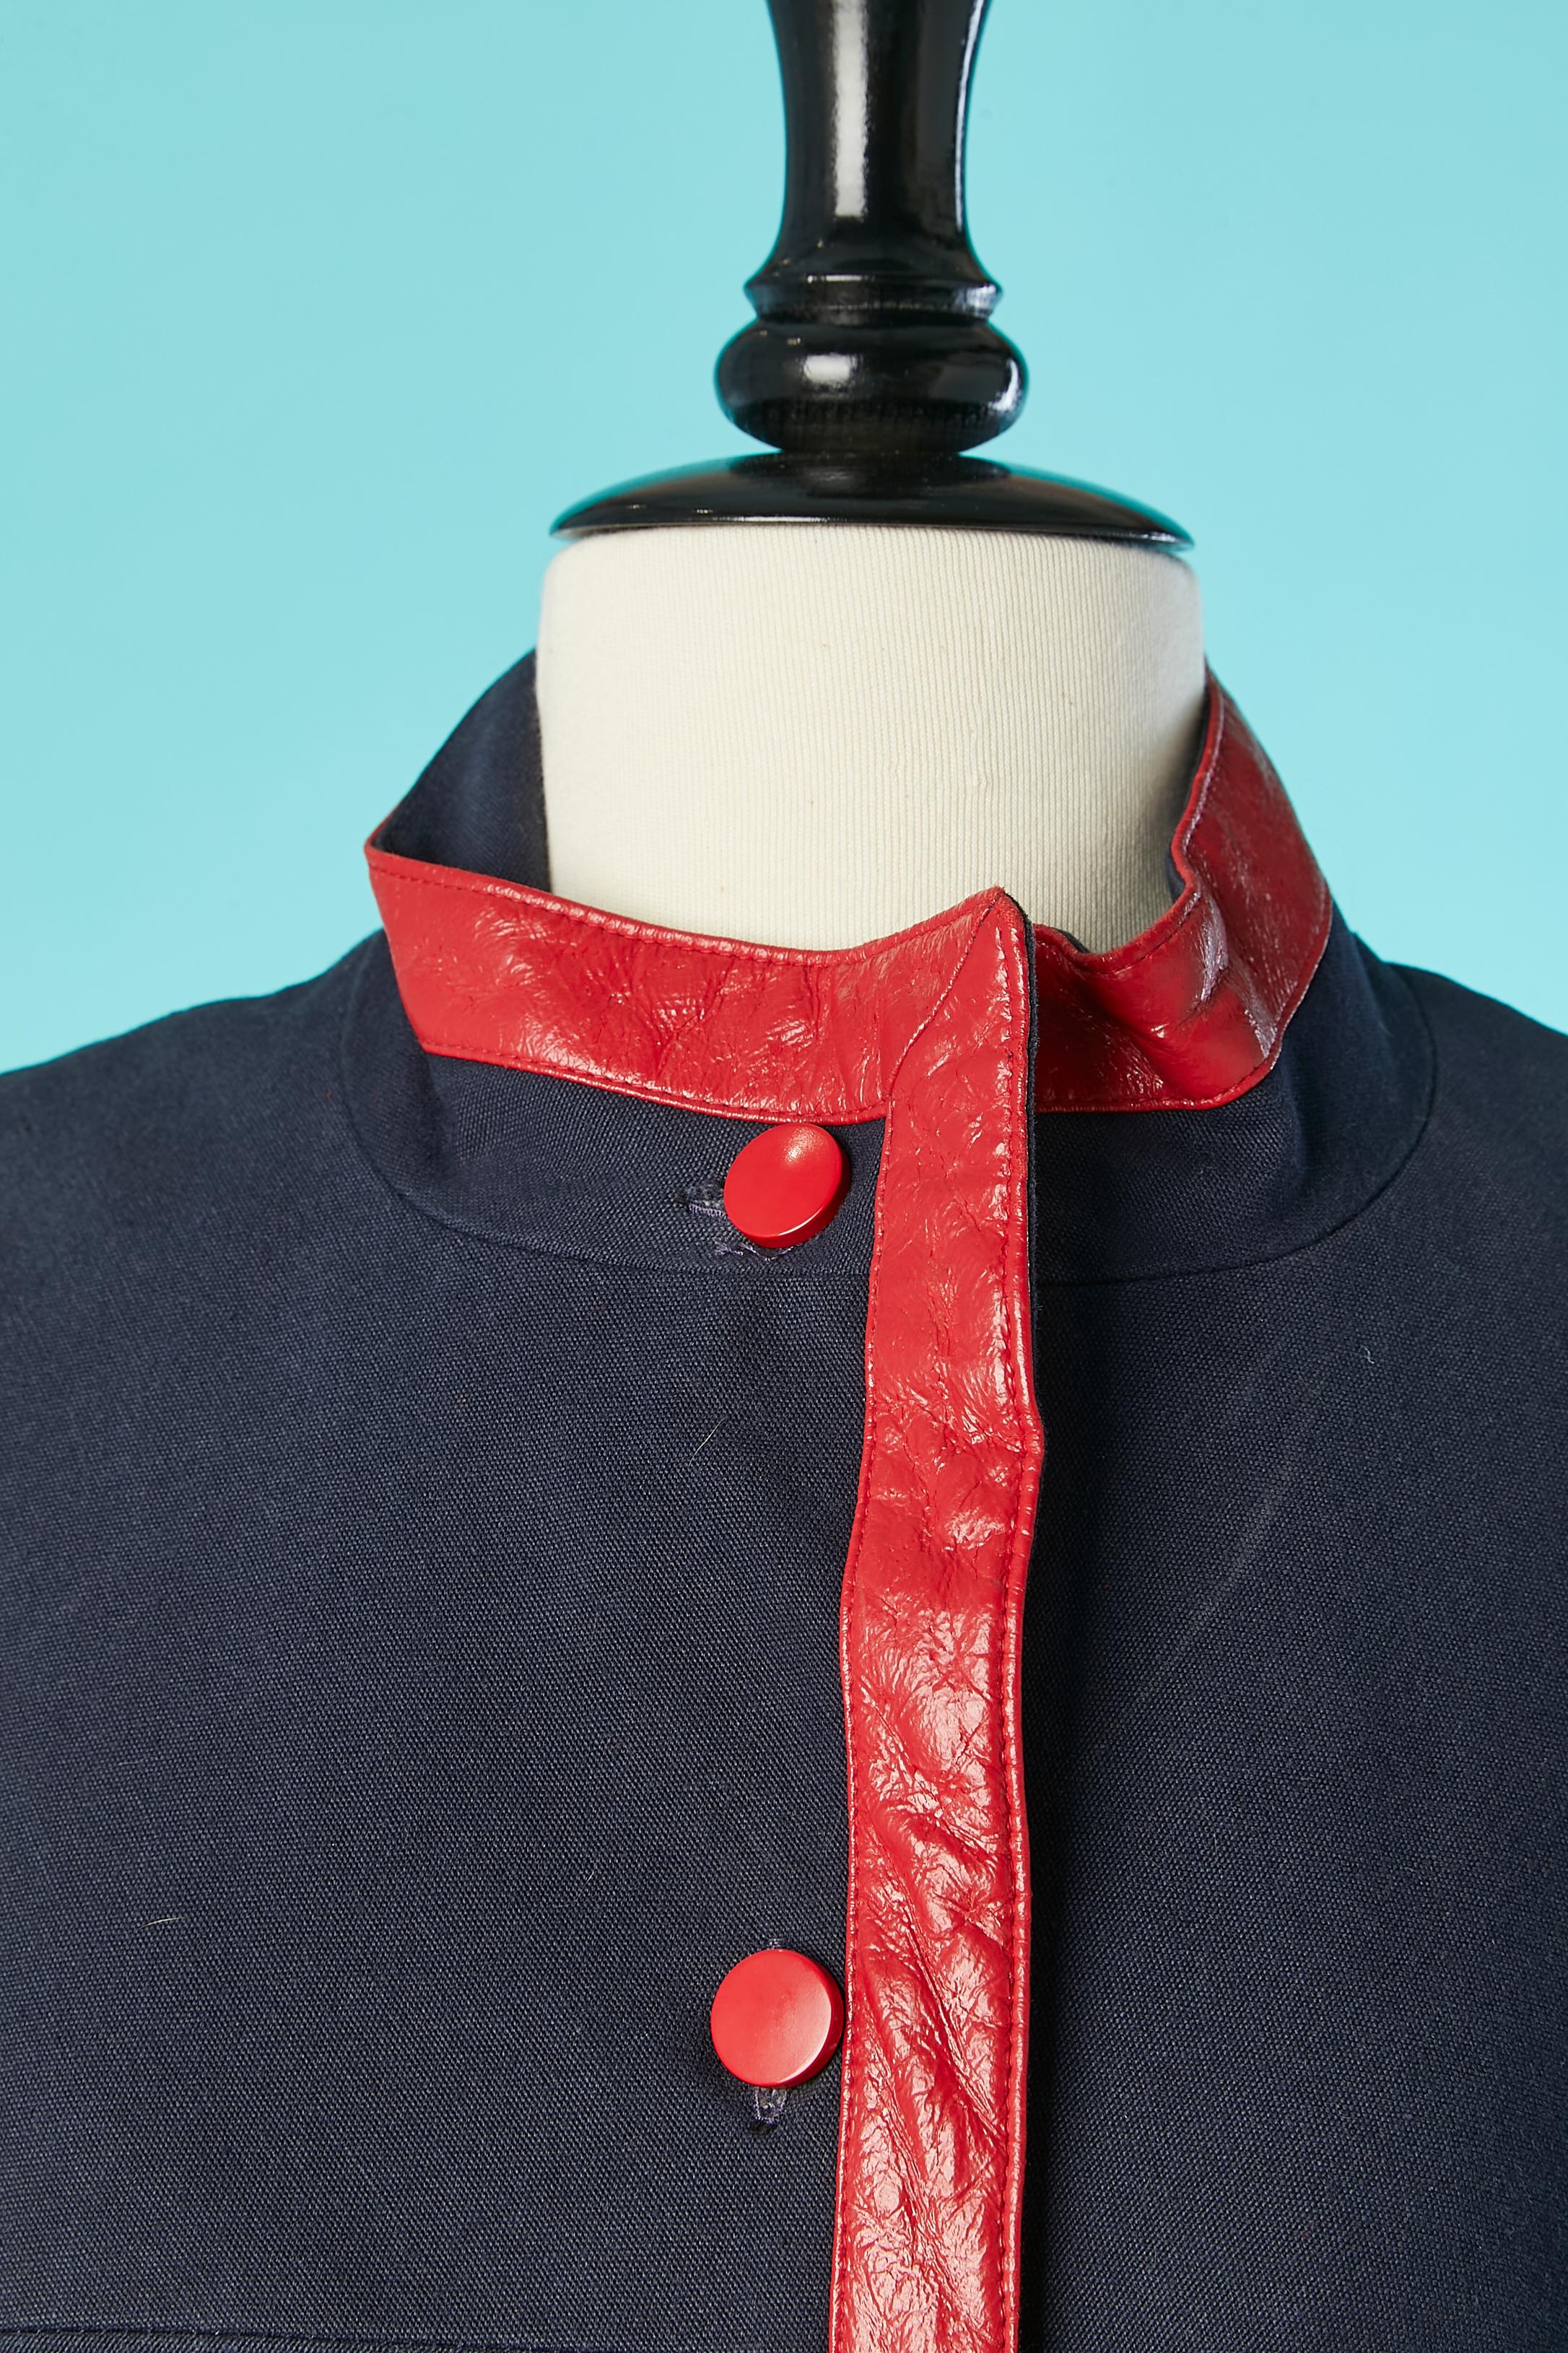 Manteau en coton bleu marine à simple boutonnage avec passepoil en PVC rouge. Pas d'étiquette de tissu mais la doublure est probablement en acétate. 
TAILLE M 